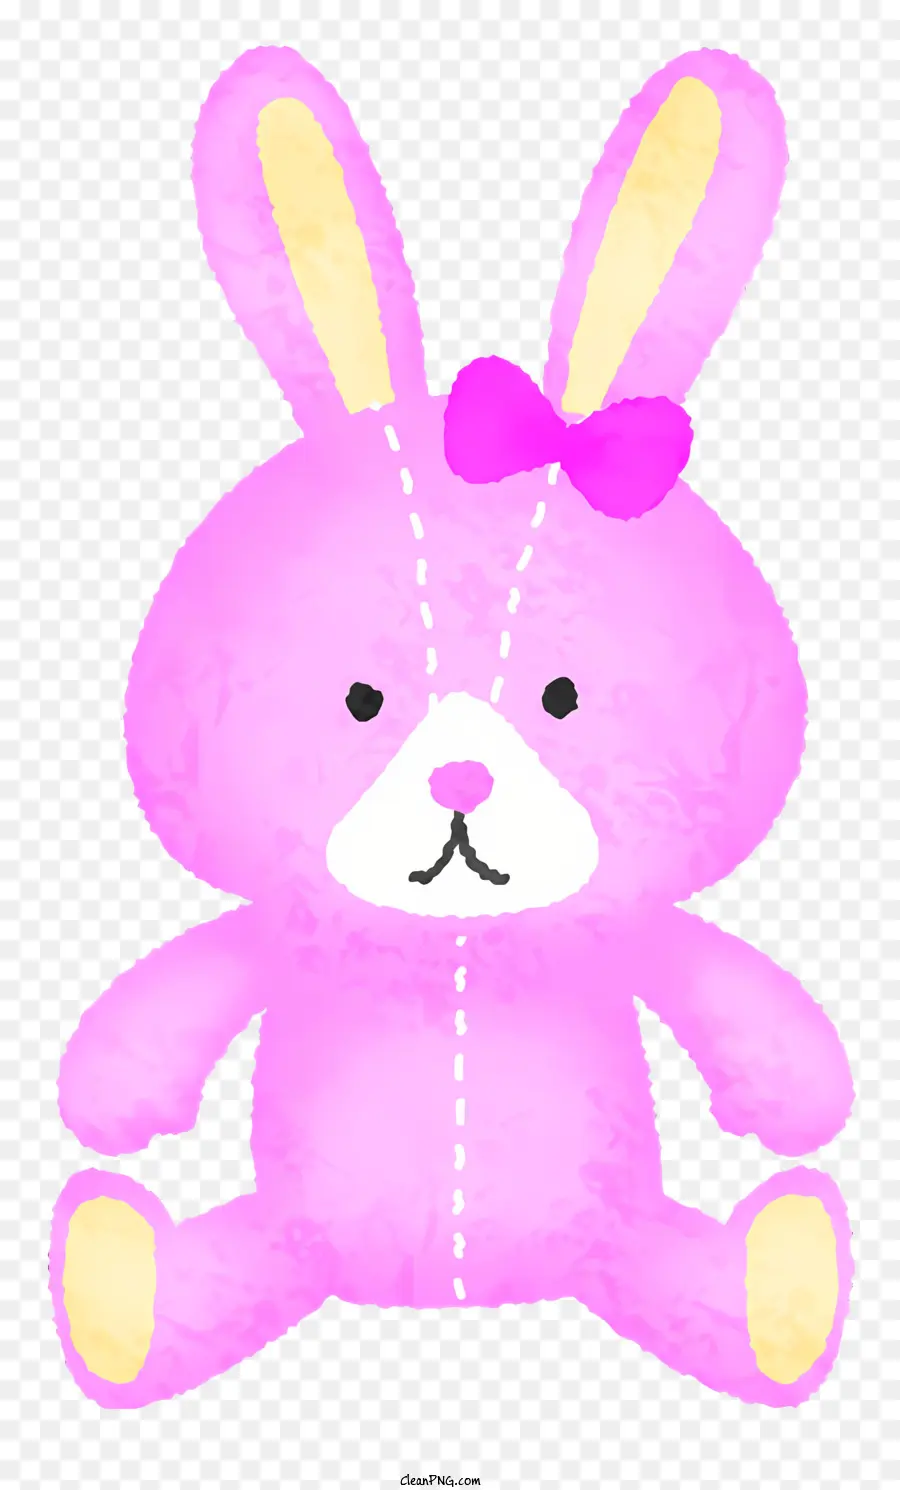 Biểu tượng màu hồng đồ chơi đồ chơi màu hồng nơ màu hồng con thỏ đồ chơi sang trọng - Thỏ màu hồng sang trọng có cung trên nền đen